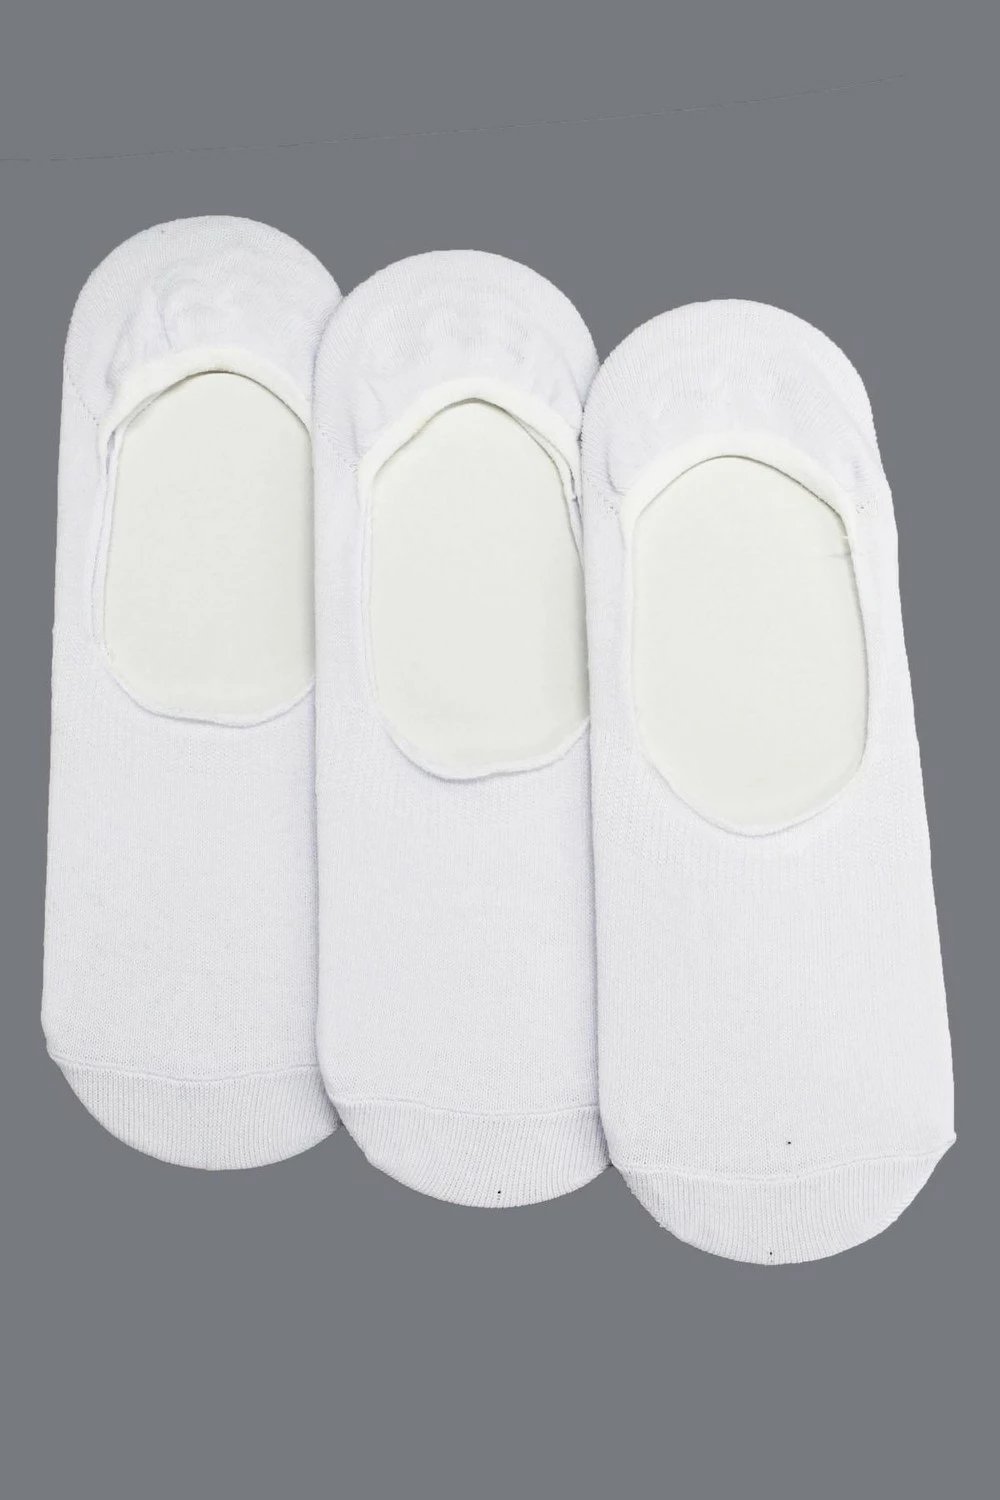 Qorape për meshkuj Tena Moda, 3 copa, të bardha 